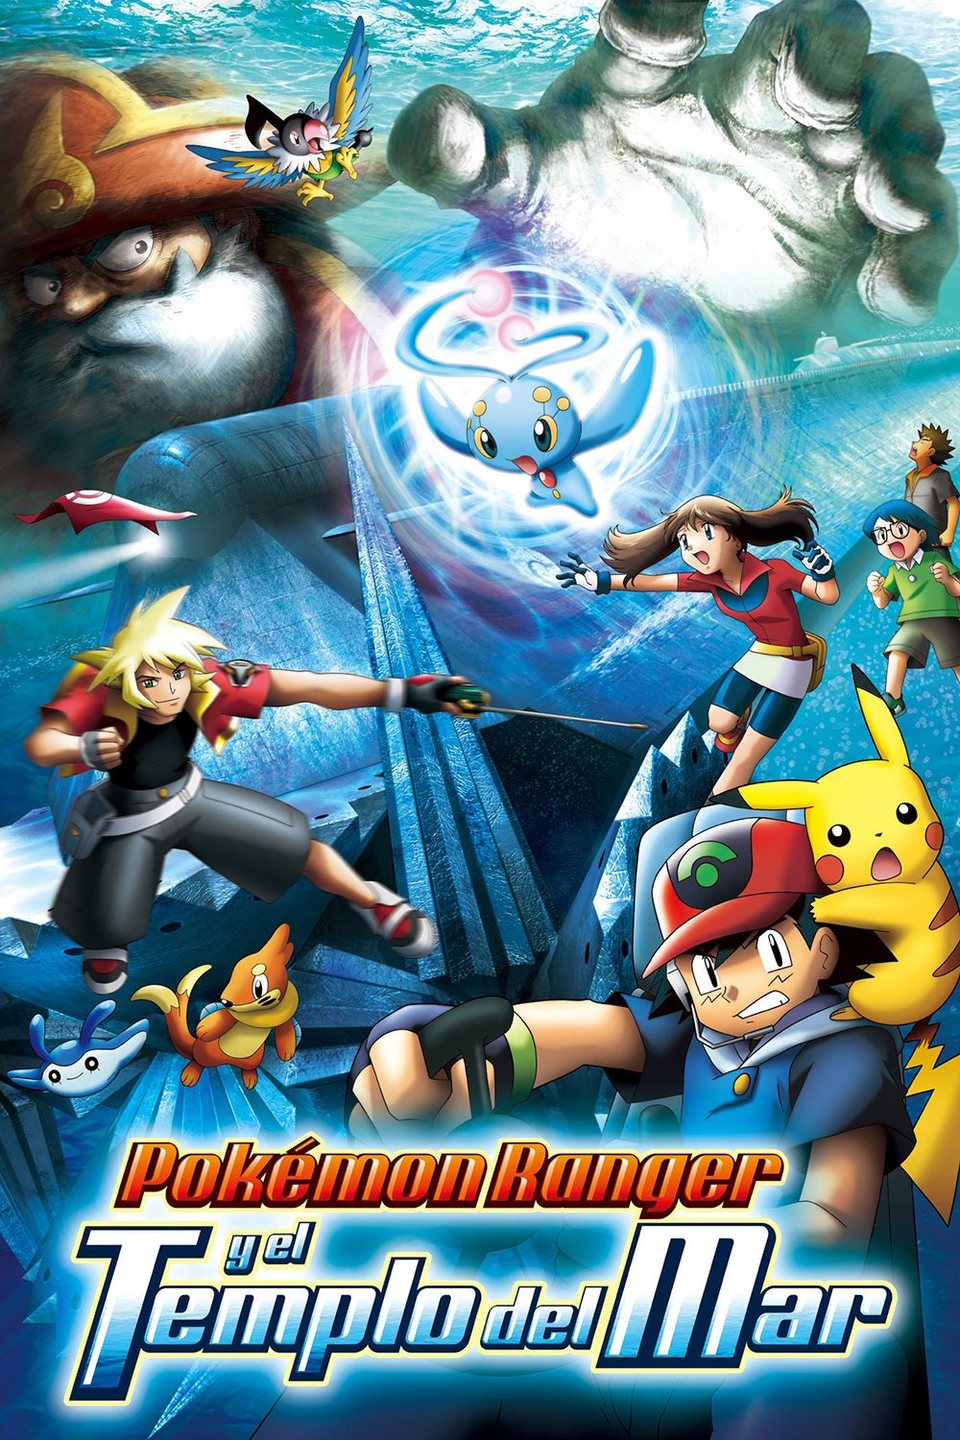 Cartel de Pokémon 9: Pokémon Ranger y el templo del mar - España